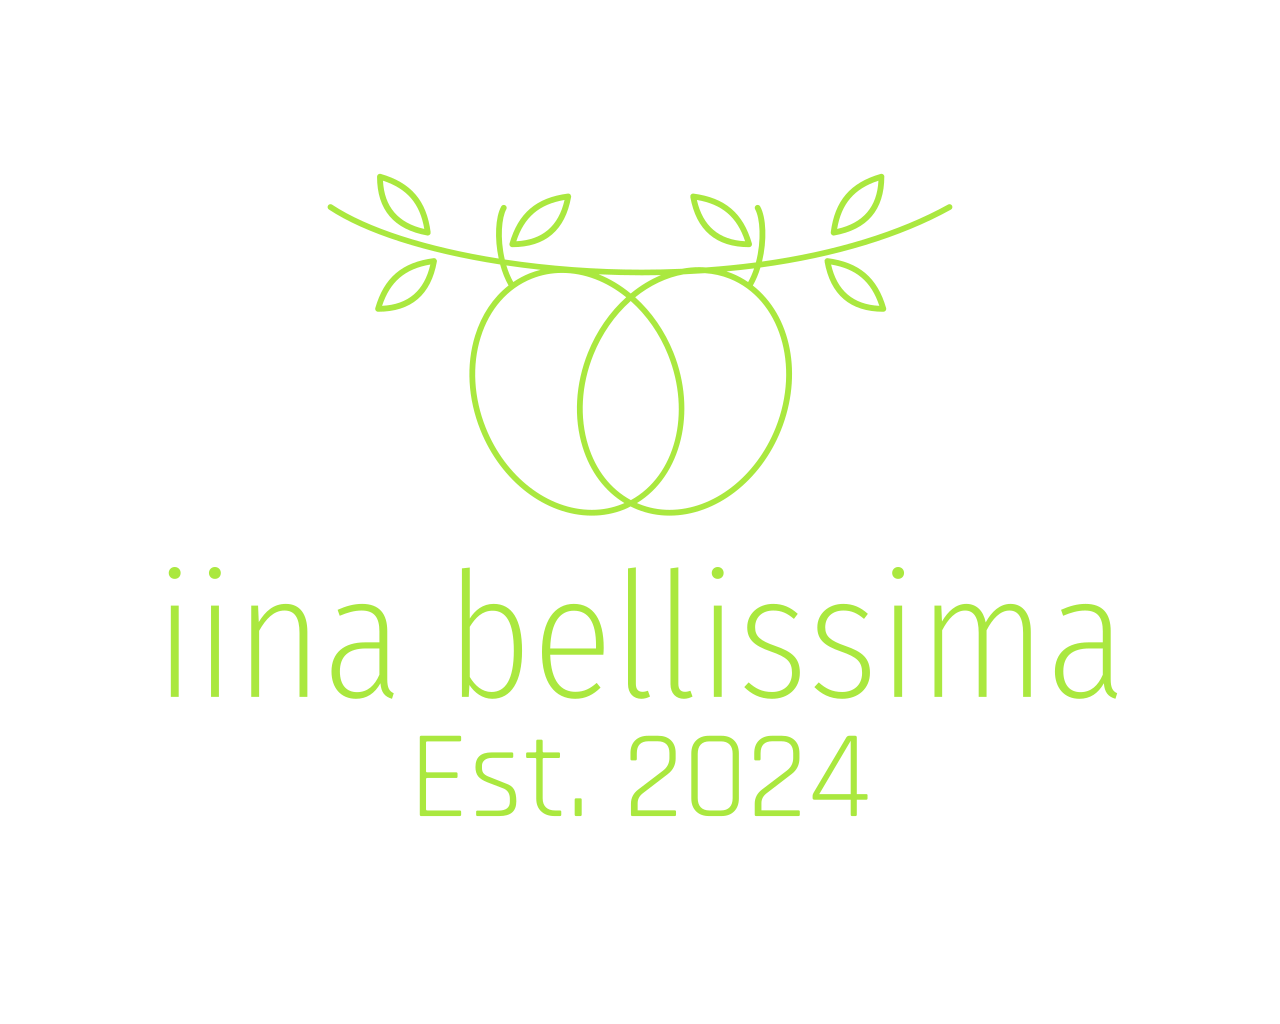 Iina Bellissima